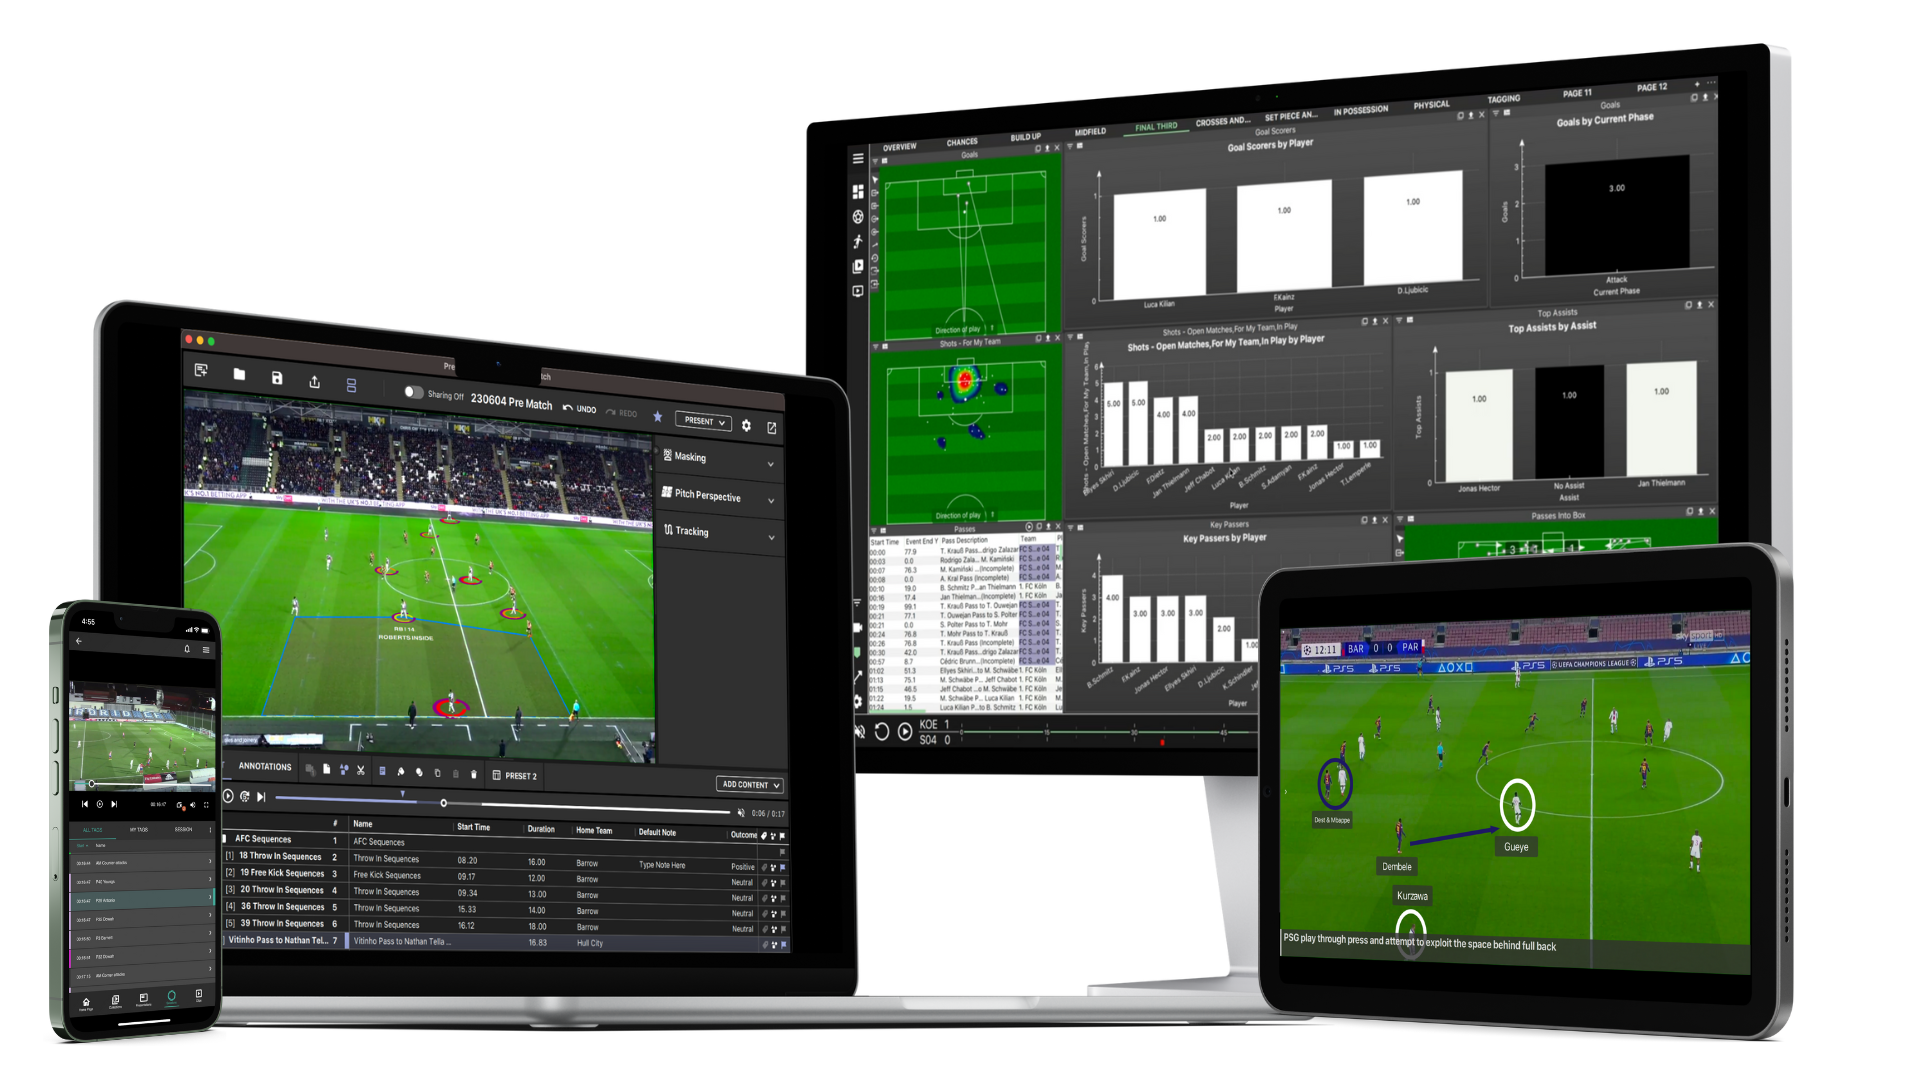 多设备显示屏展示了 MatchTracker 用于性能分析的各种功能。图片展示了智能手机、平板电脑和计算机显示器上的软件。这些设备展示了足球比赛录像、球员位置和动作的数据叠加，以及各种分析面板，包括详细说明球员统计数据和比赛事件的图表和图形。